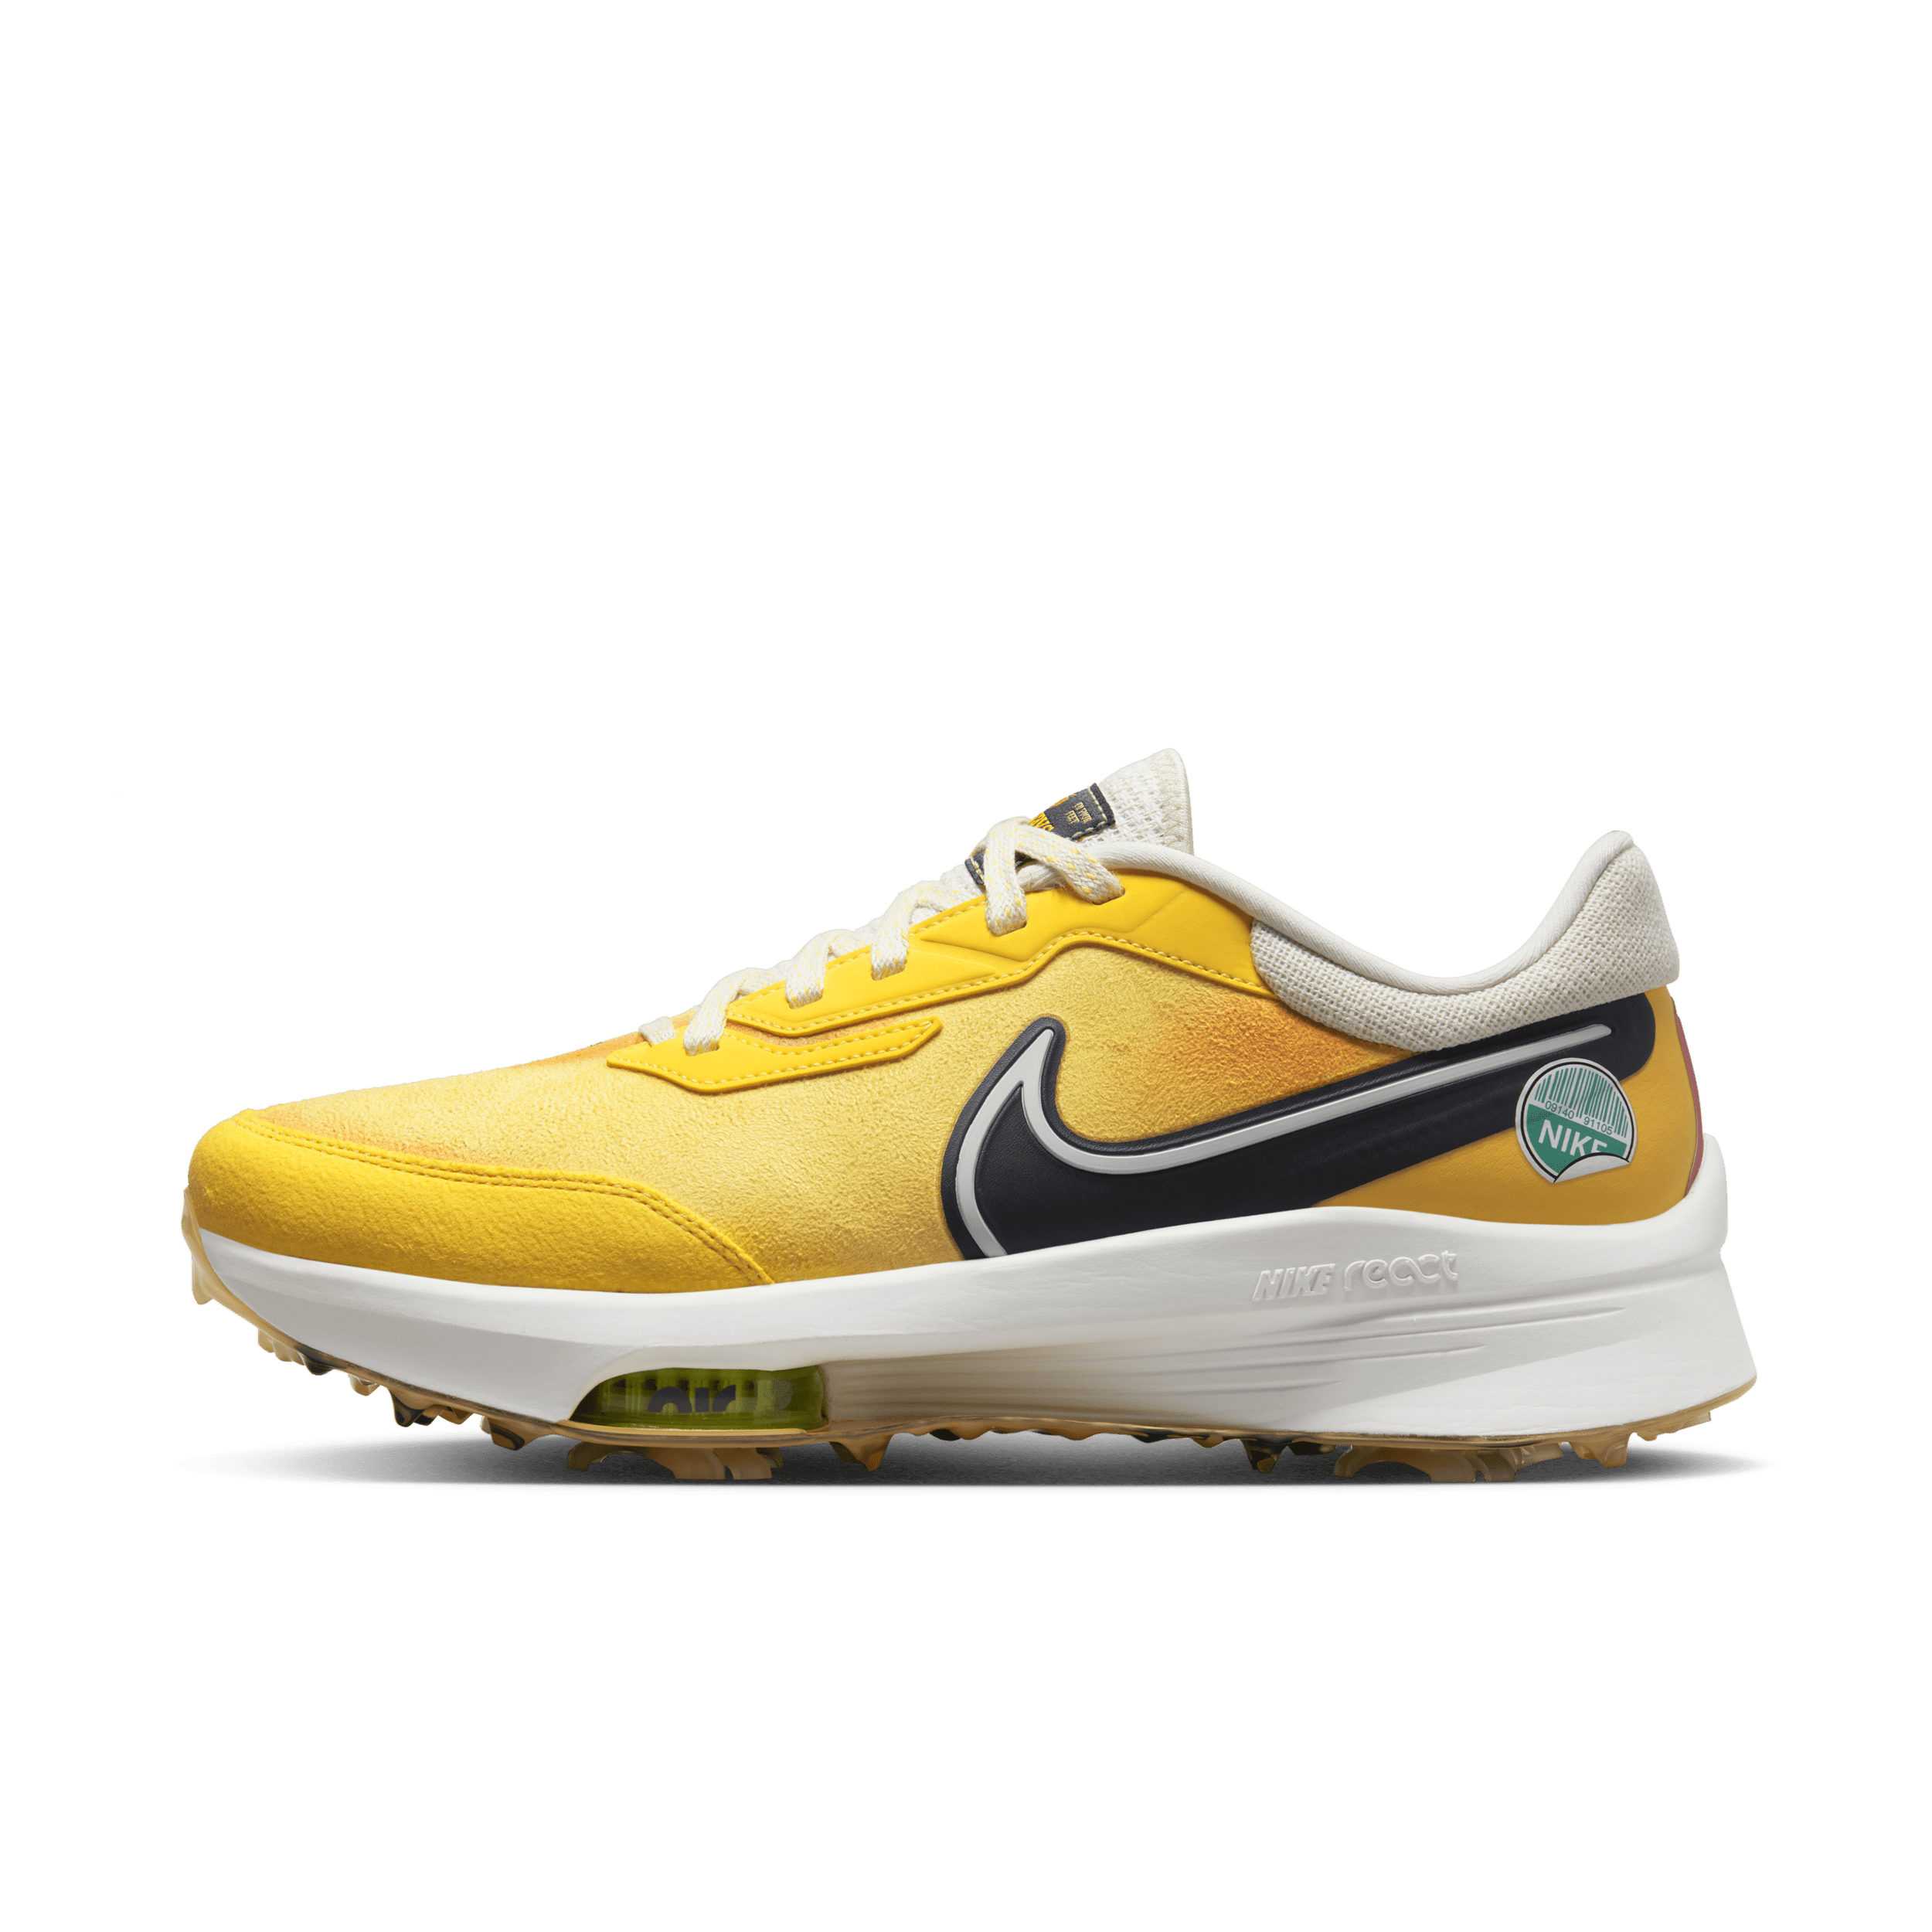 Nike Air Zoom Infinity Tour NEXT% NRG golfschoenen – Bruin